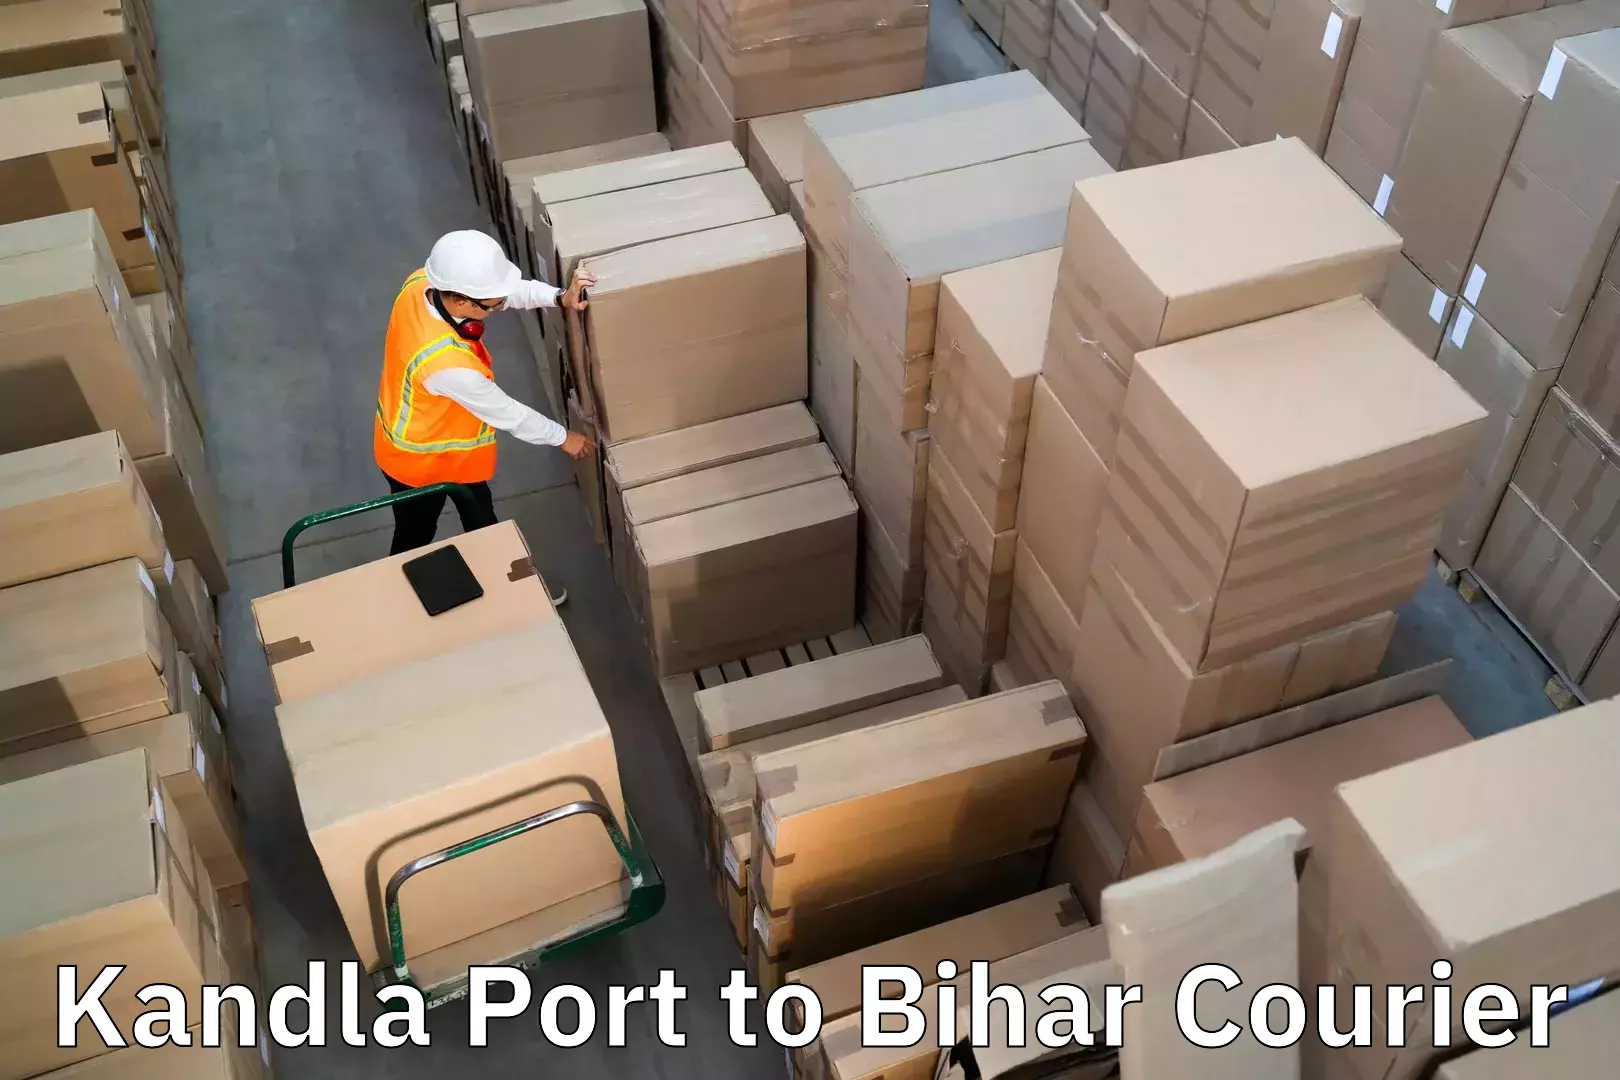 Baggage transport scheduler Kandla Port to Bhorey